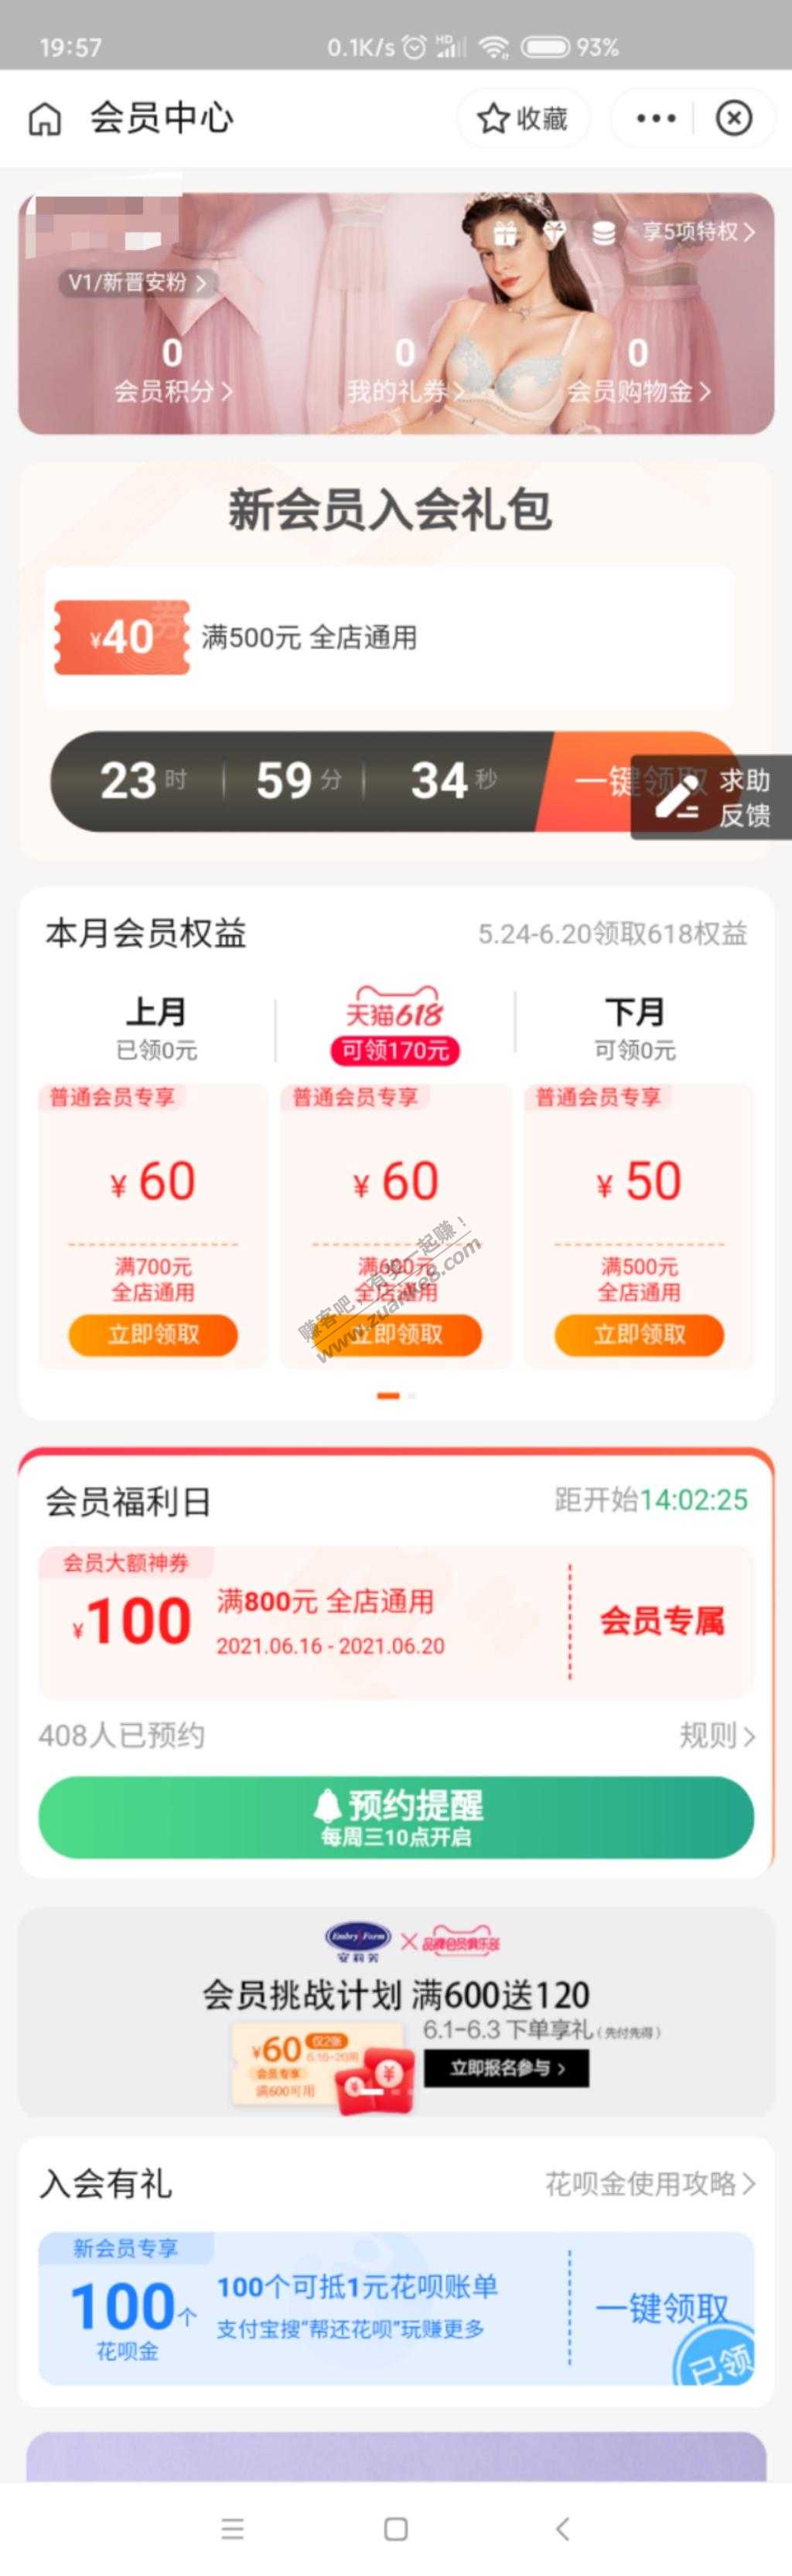 100花~贝金-非后官方-惠小助(52huixz.com)